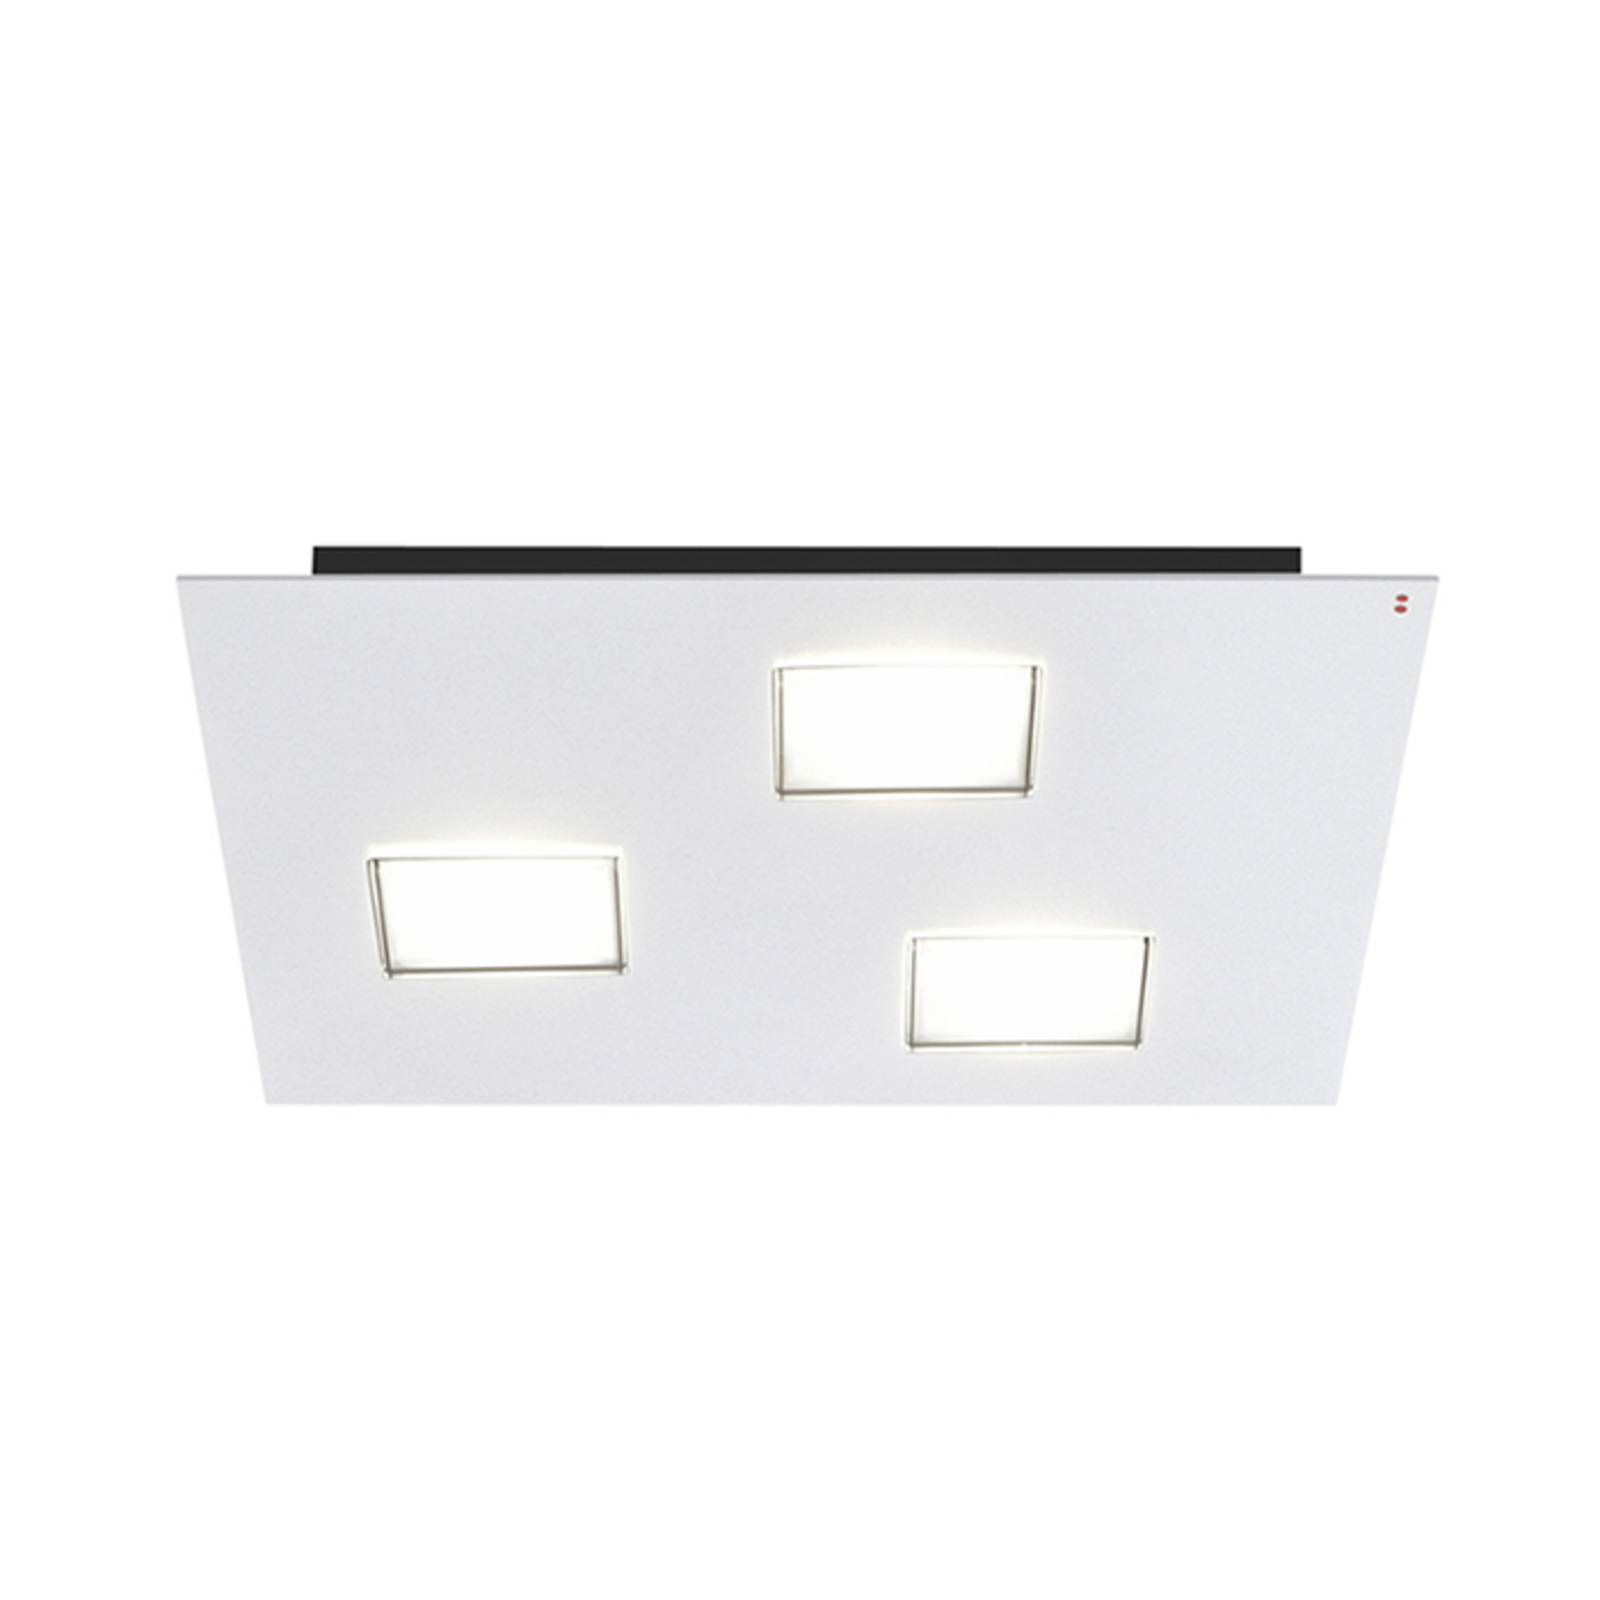 Quarter – lampa sufitowa LED, biała, 3 LED